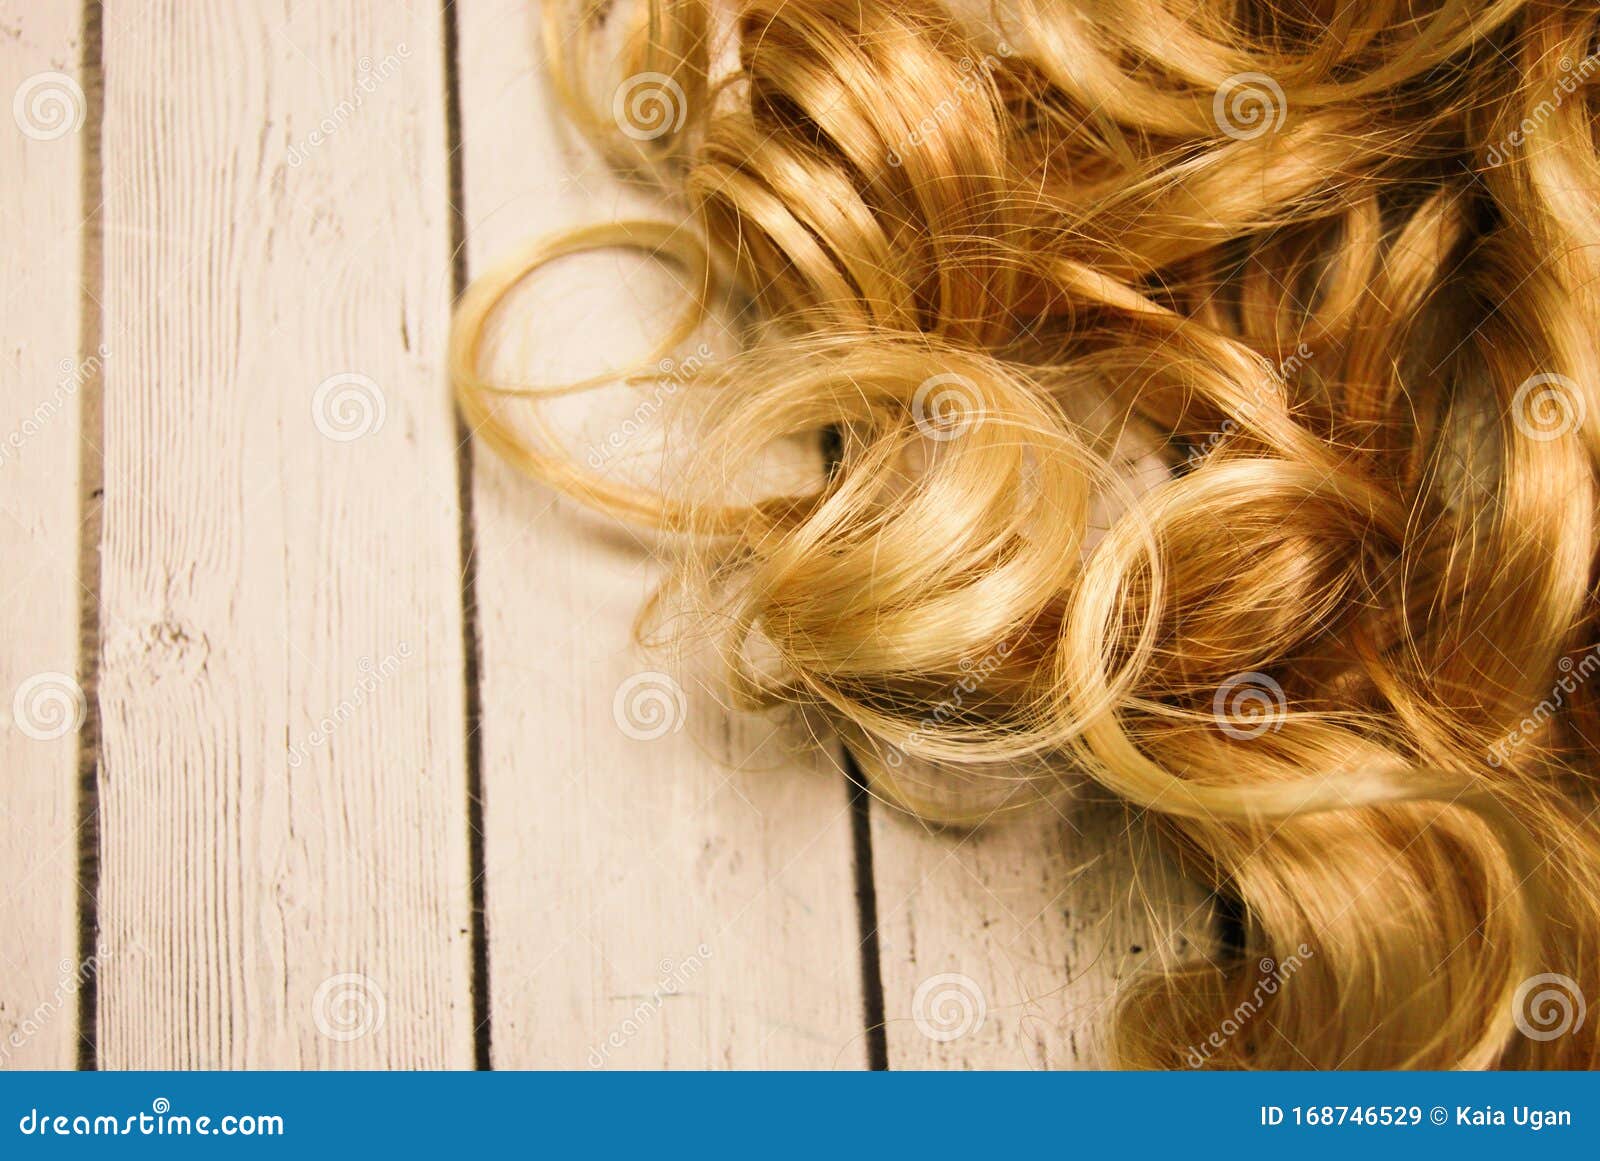 5. Longest Blonde Hair Weaves - wide 7